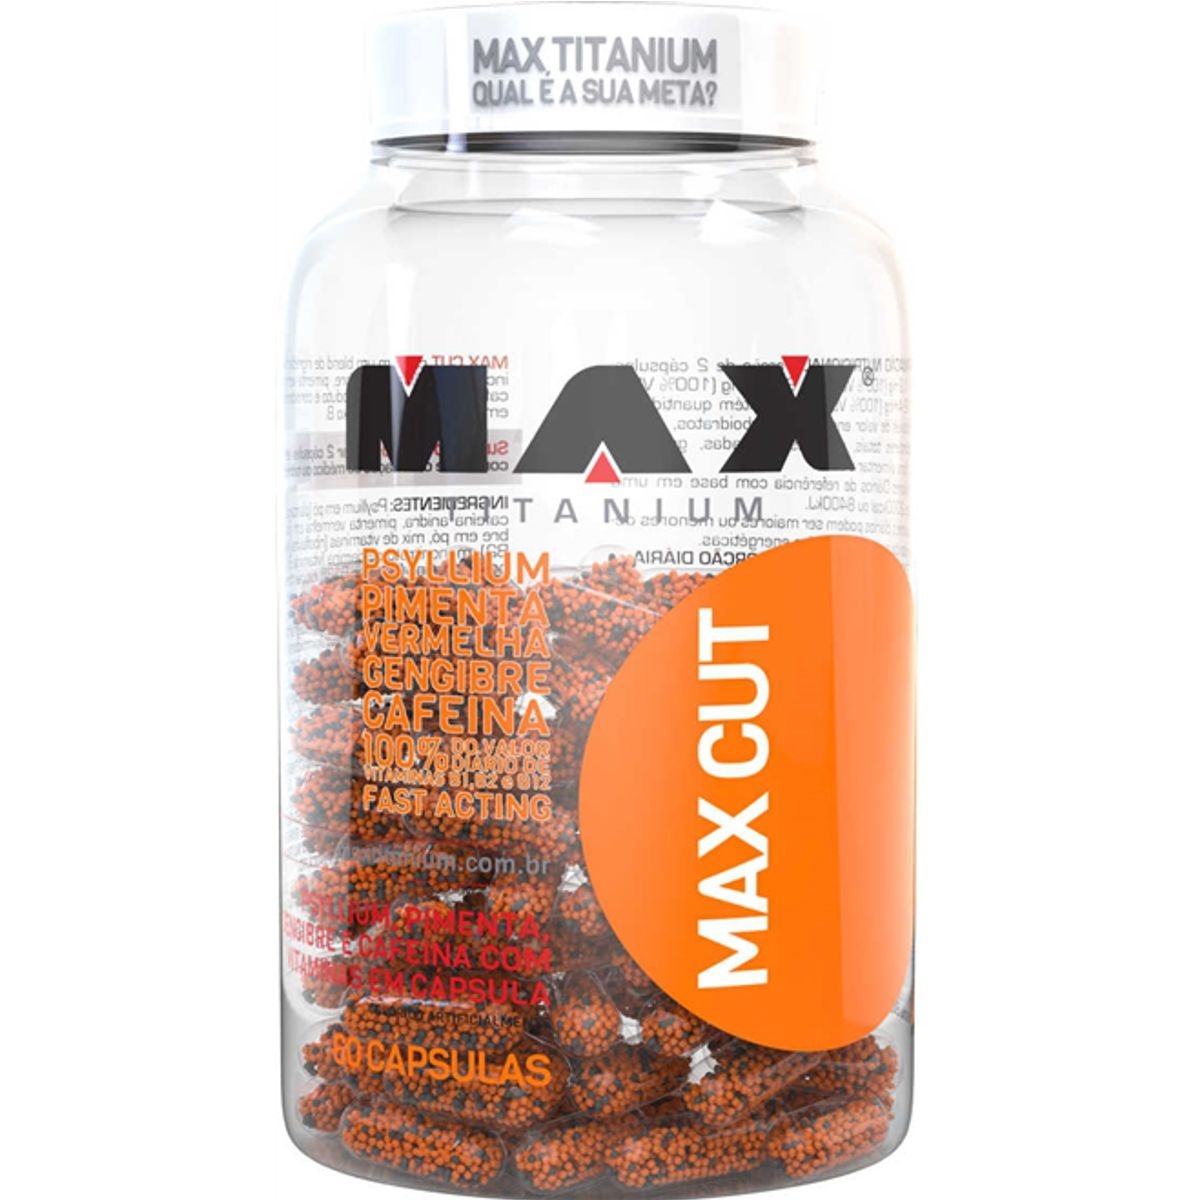 Max Cut 60 Cápsulas - Max Titanium - Mammut Suplementos e Moda Esportiva